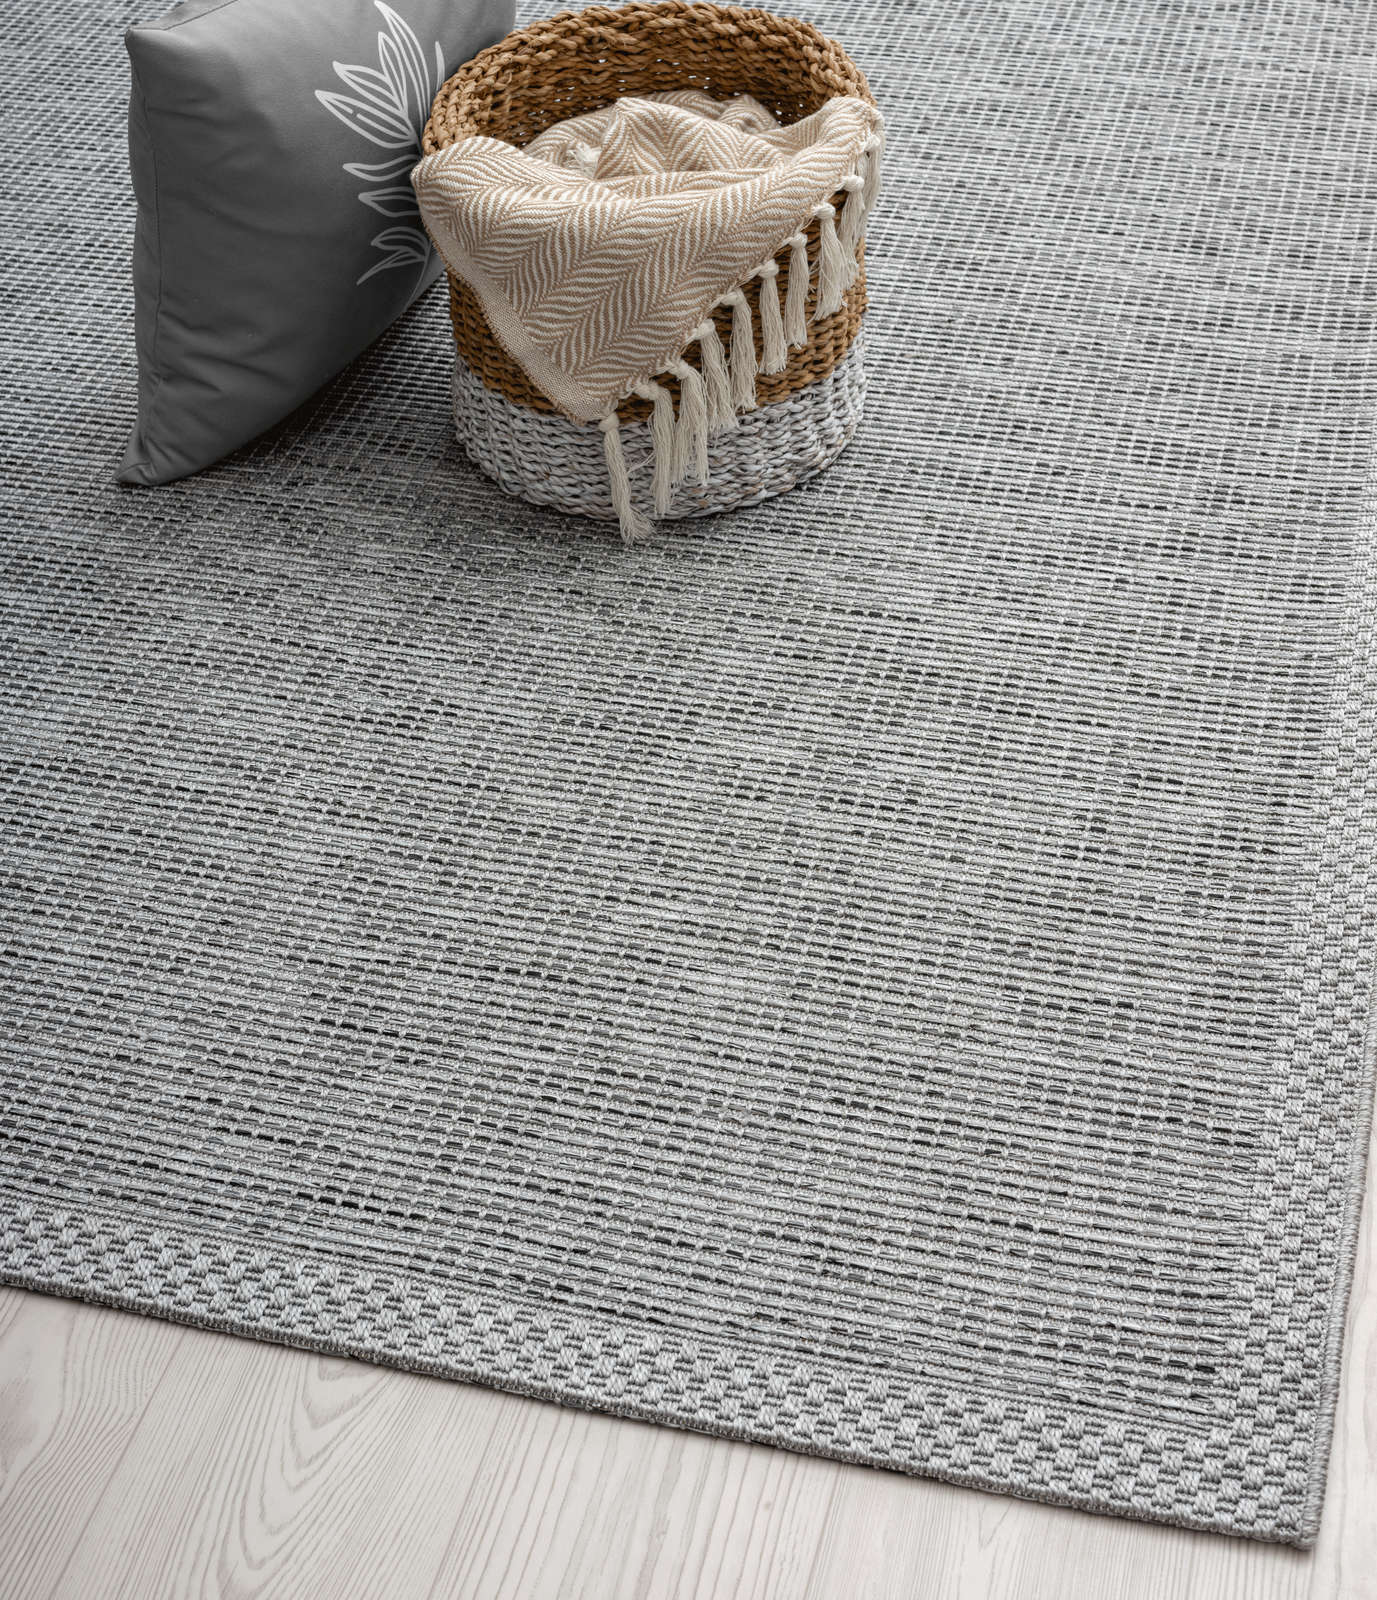             Schlichter Outdoor Teppich in Grau – 220 x 160 cm
        